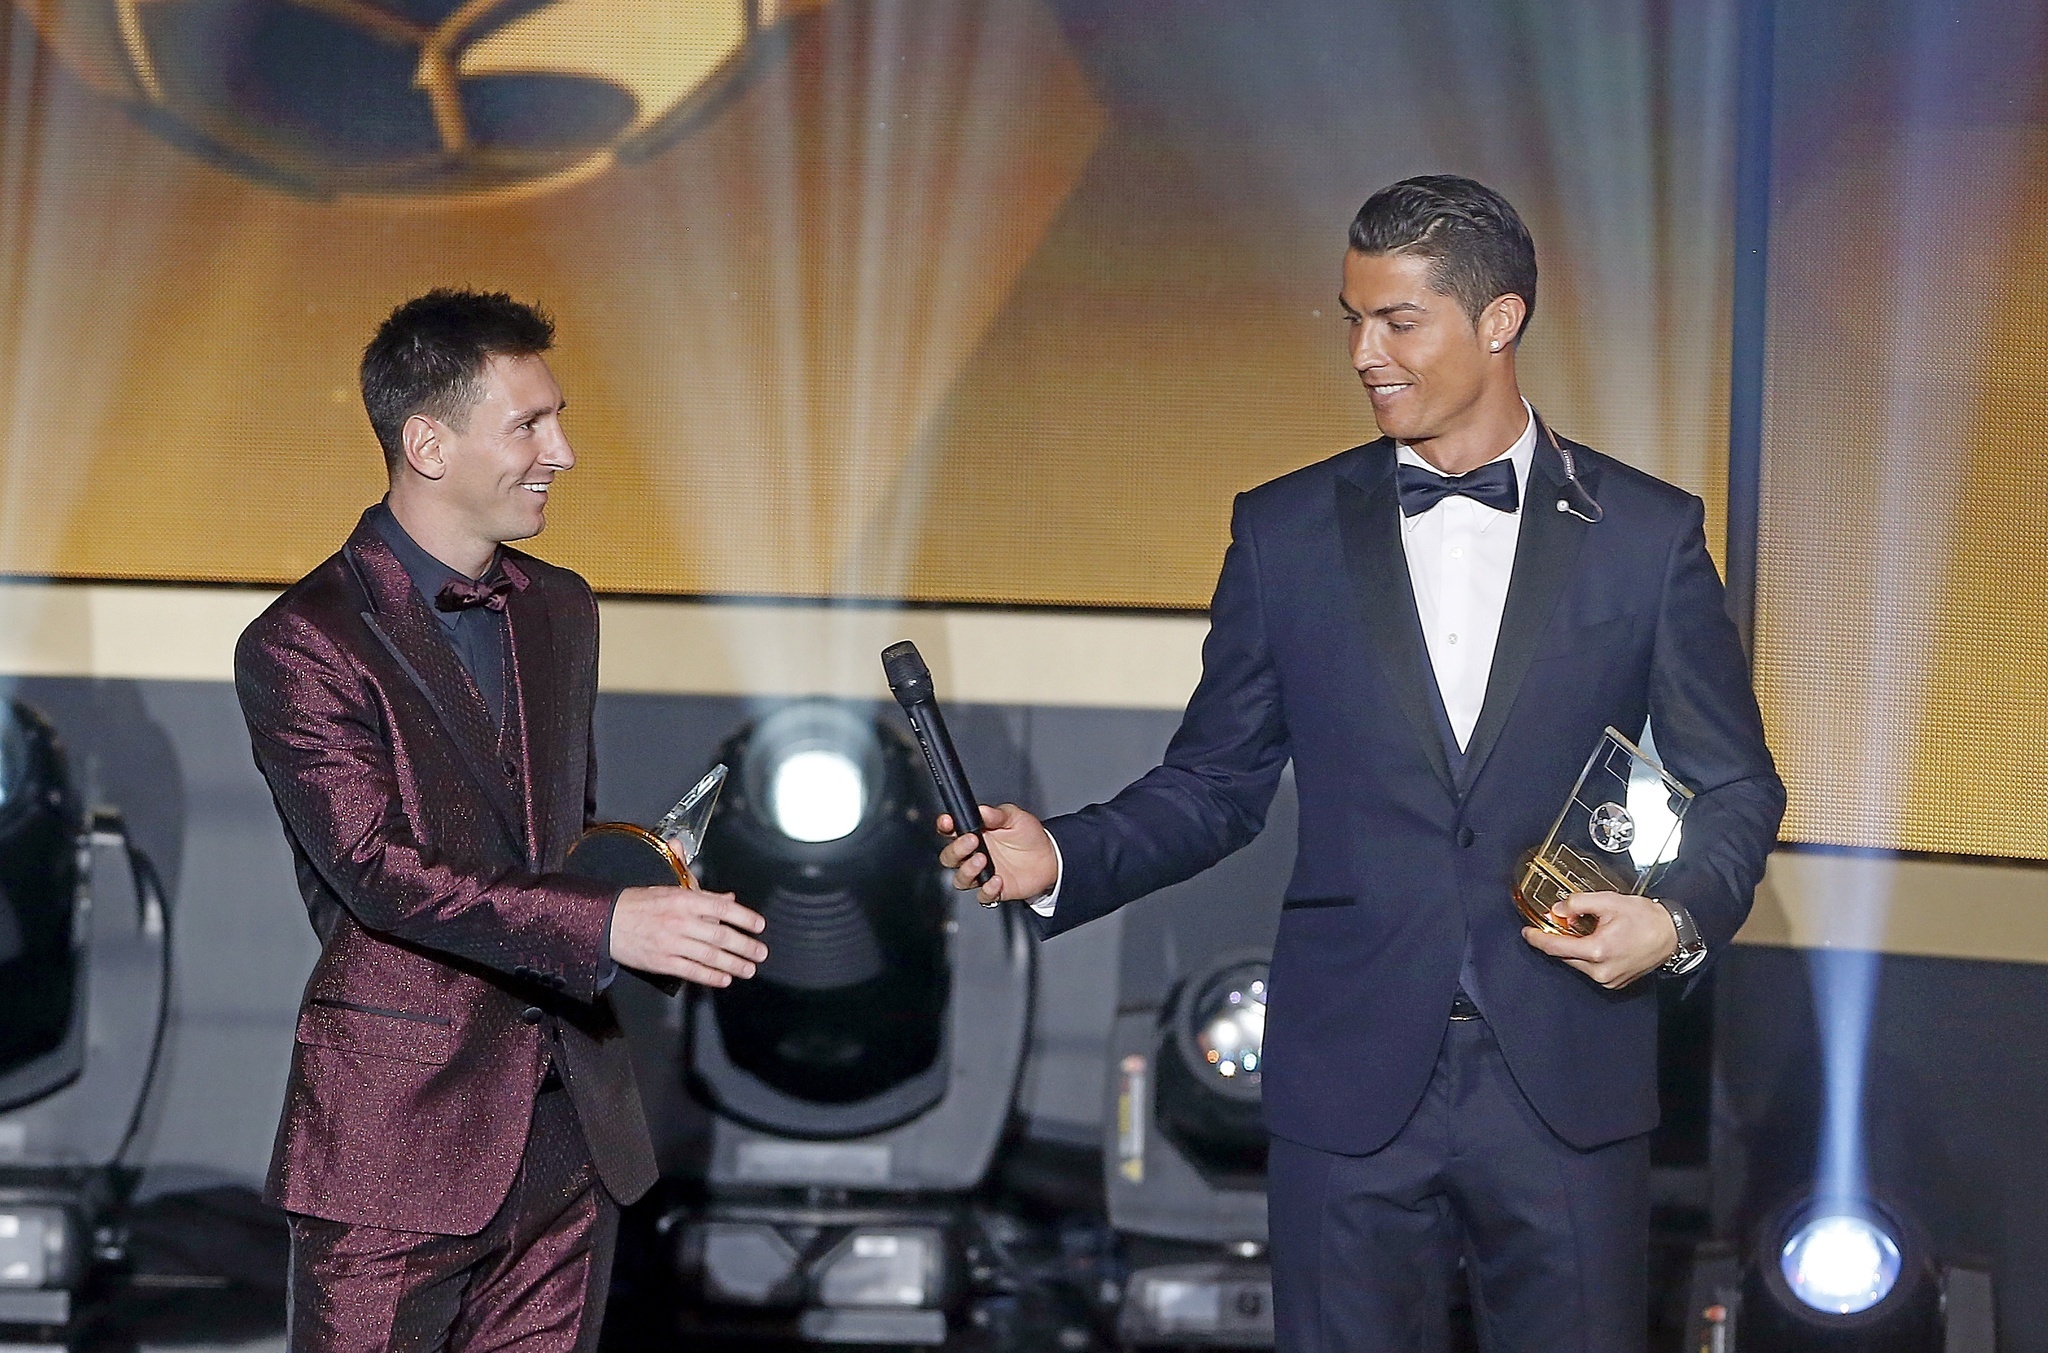 Bí quyết giúp Benzema chấm dứt kỷ nguyên Ronaldo - Messi - Bóng Đá